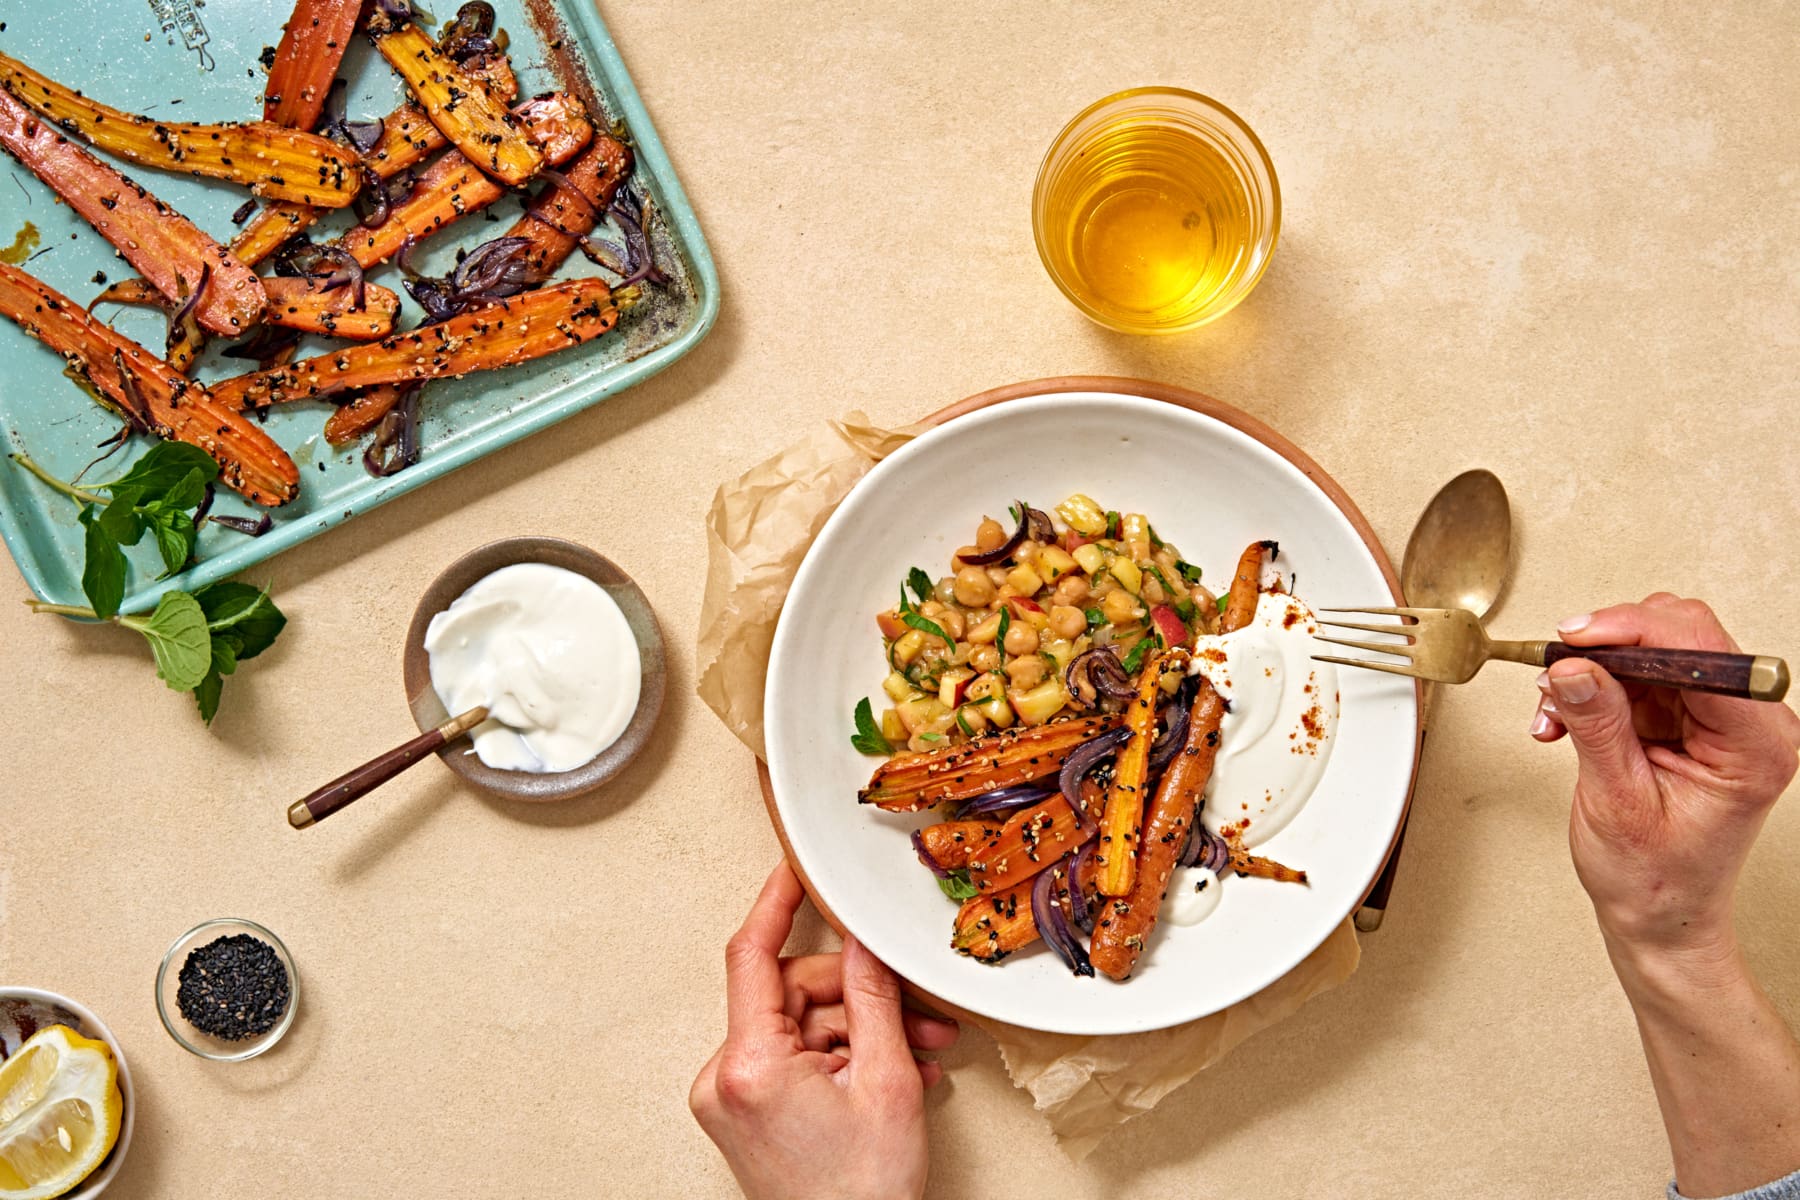 Karamelisierte Karotten mit Kichererbsen - so lecker kann die kulinarische Zukunft aussehen.